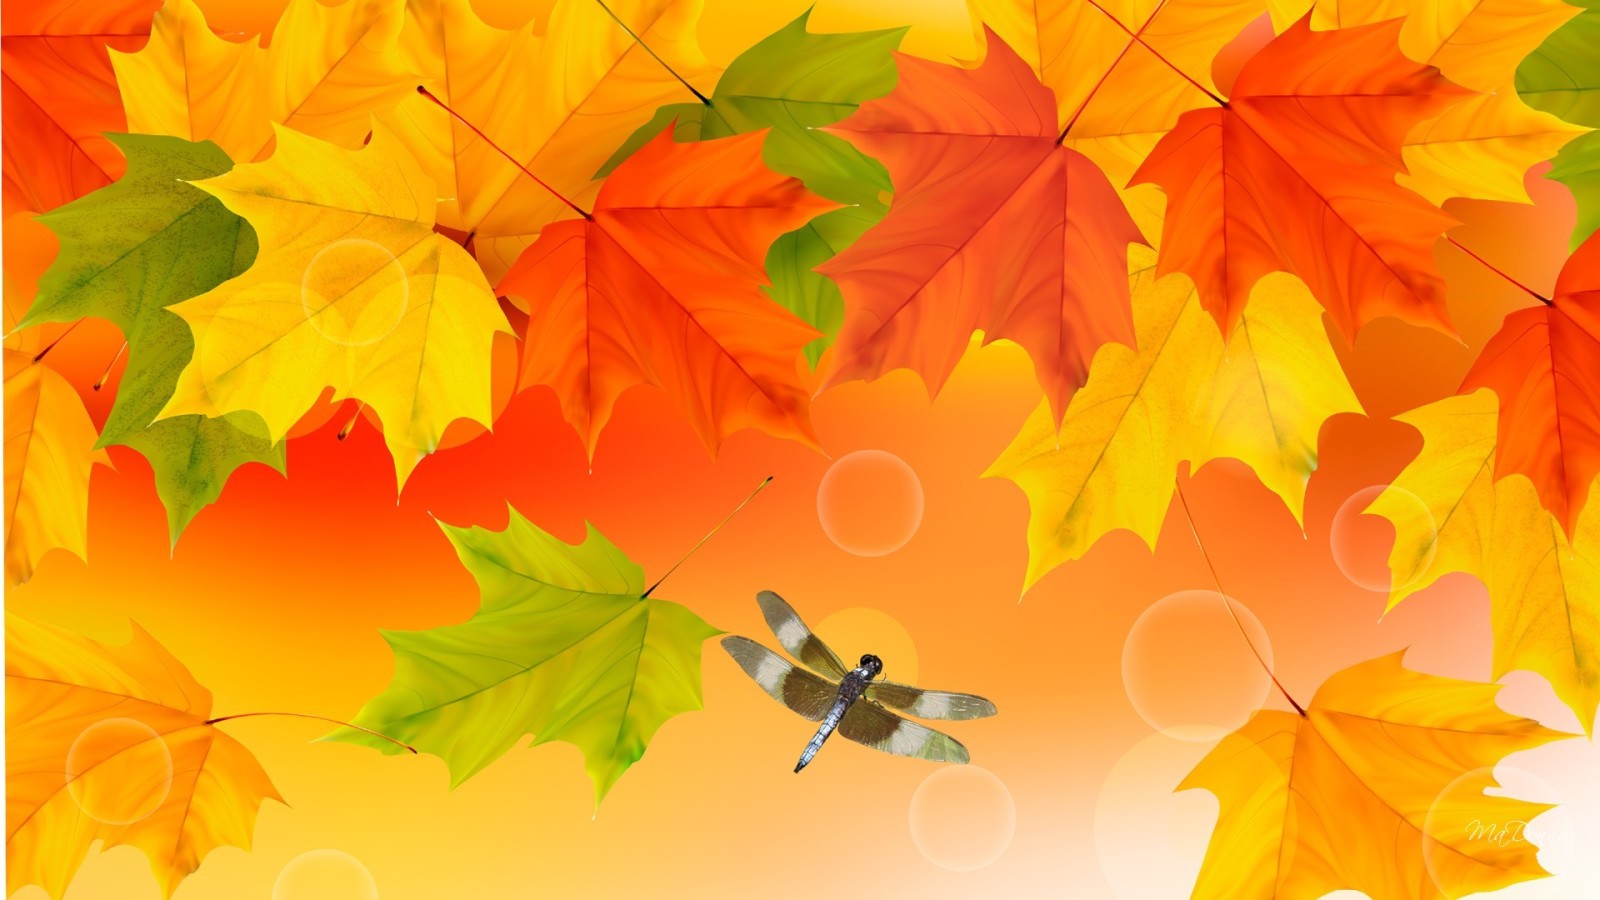 musim gugur, Daun-daun, maple, serangga, kolase, capung